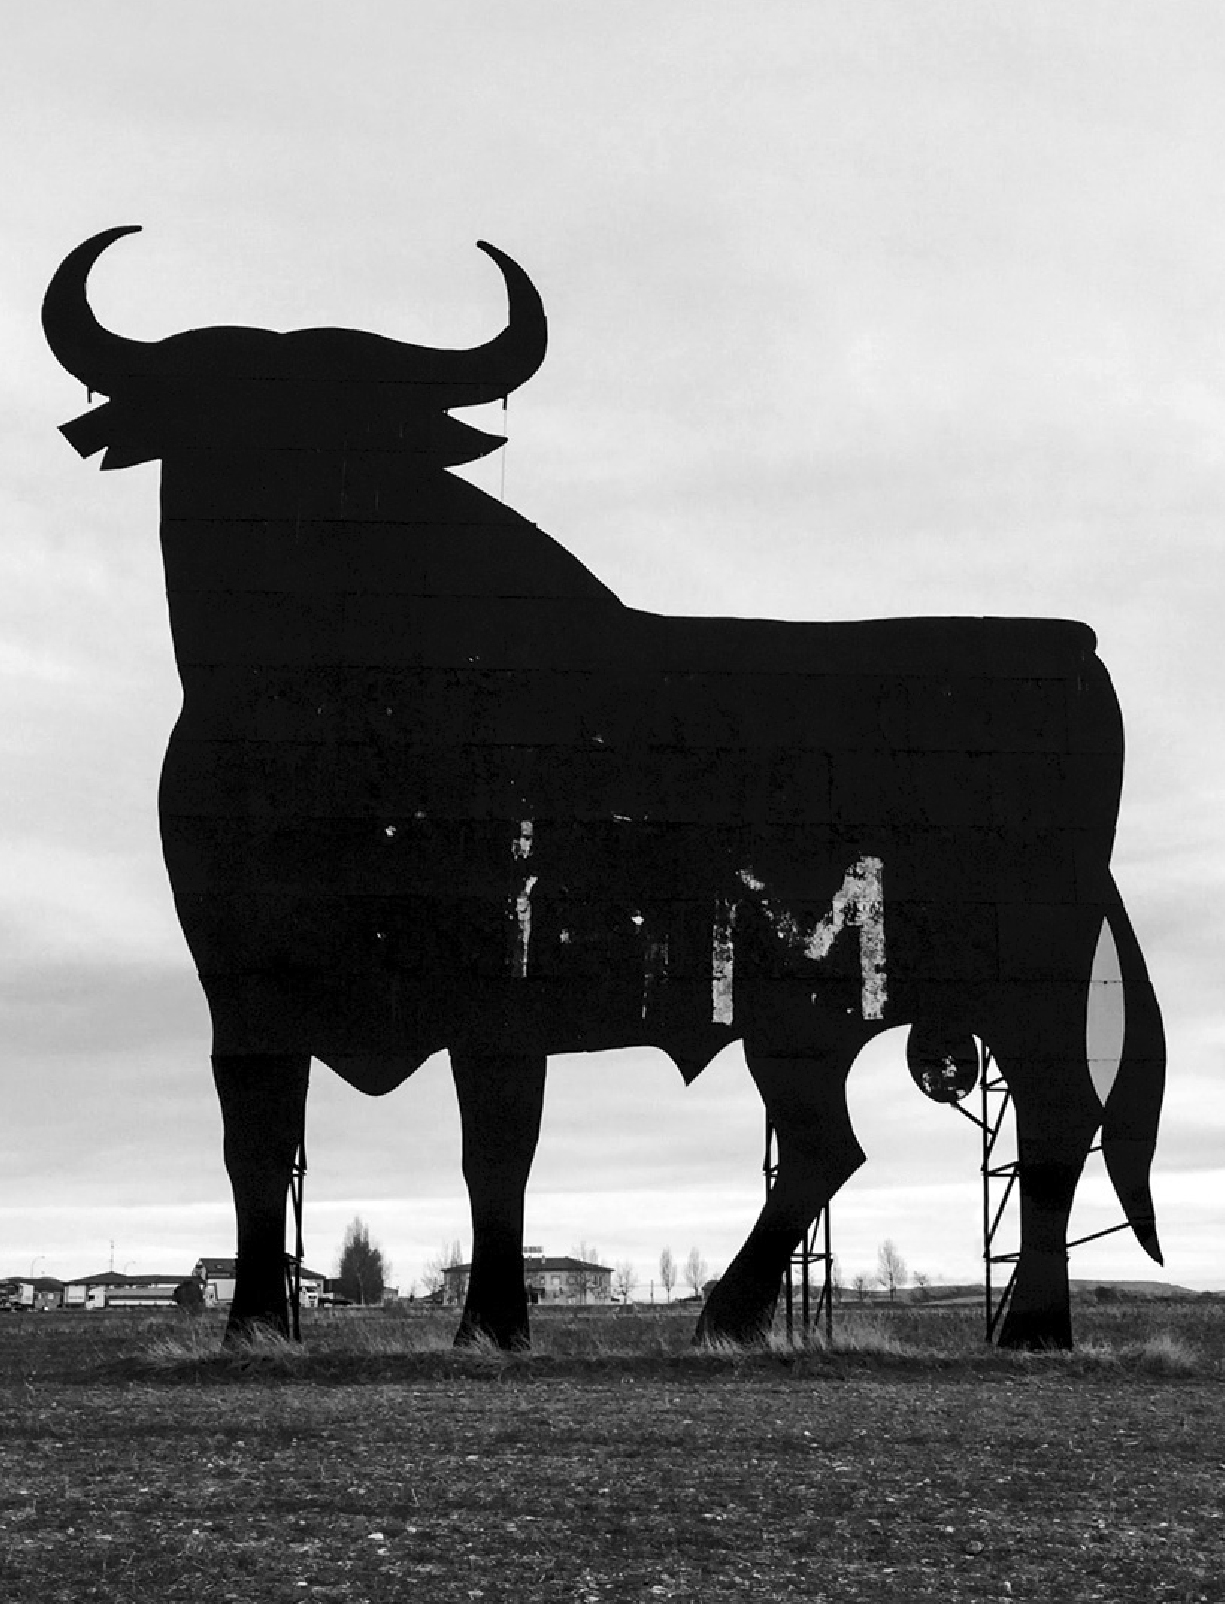 Fotografía de la escultura de un toro de hierro en el medio del campo. Fotografía utilizada para la sección "Quiénes somos" del sitio web Nacho Jota. Servicios de comunicación y diseño